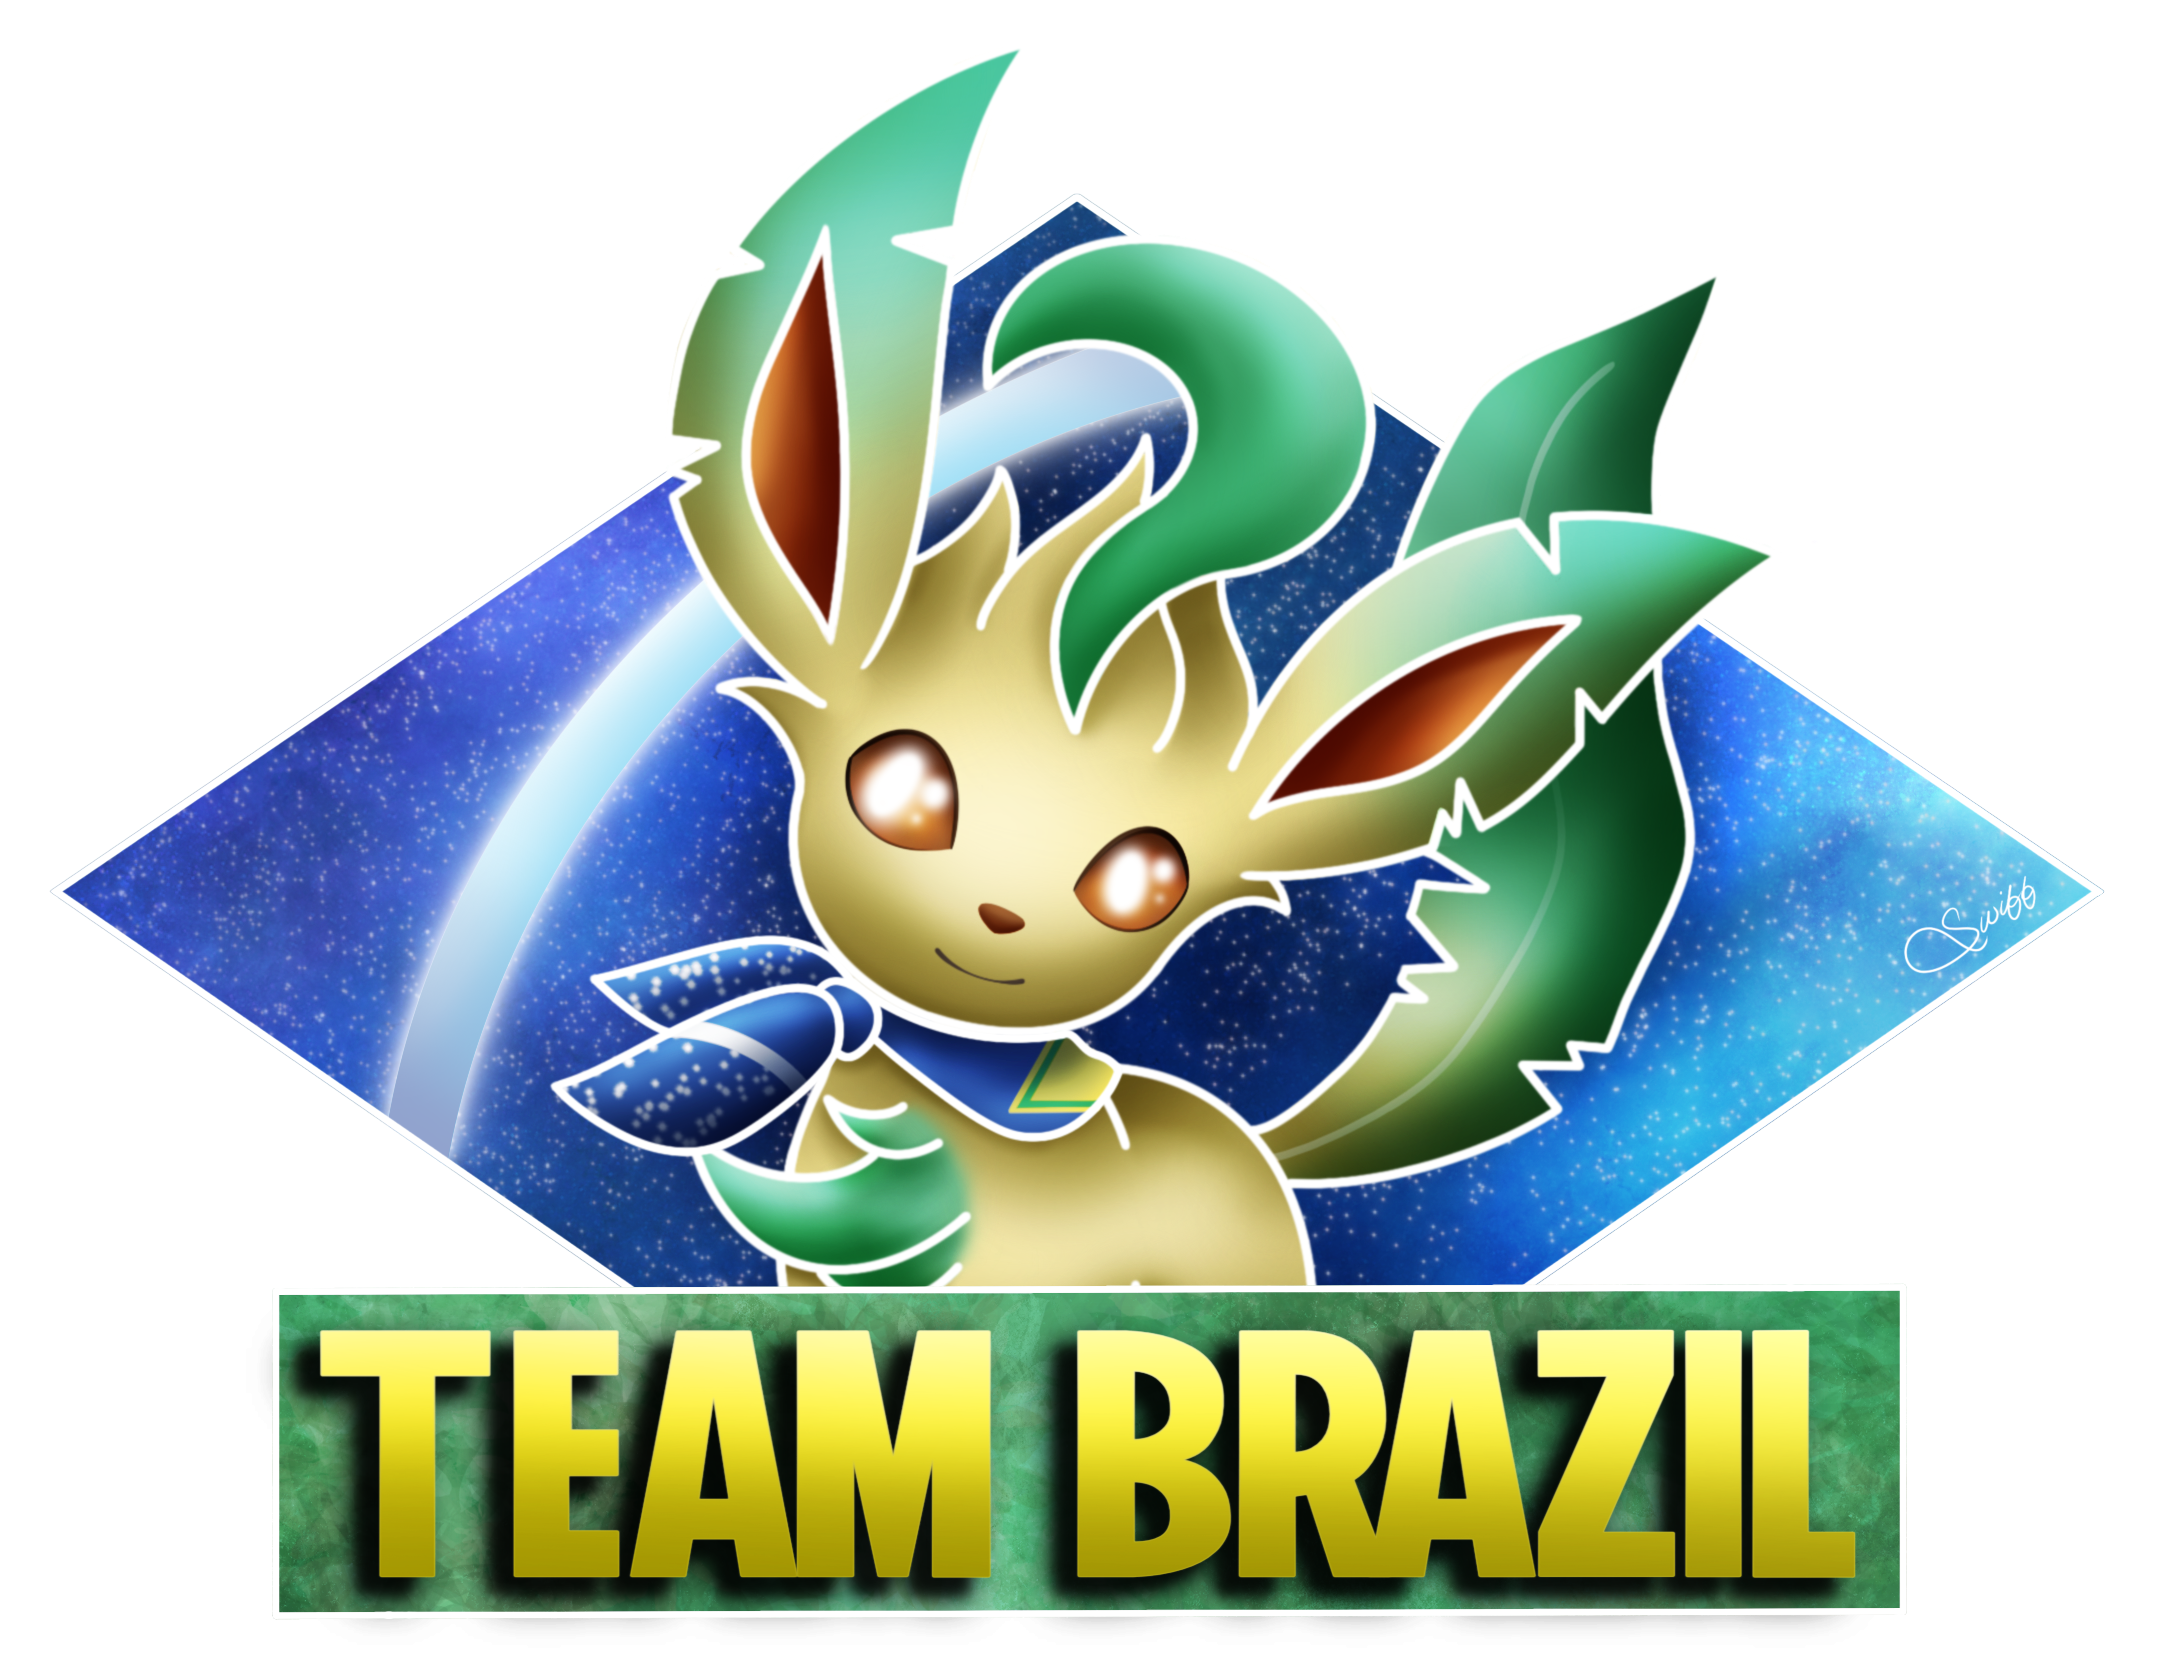 Team_Brazil_-_World_Cup_Randbats.png